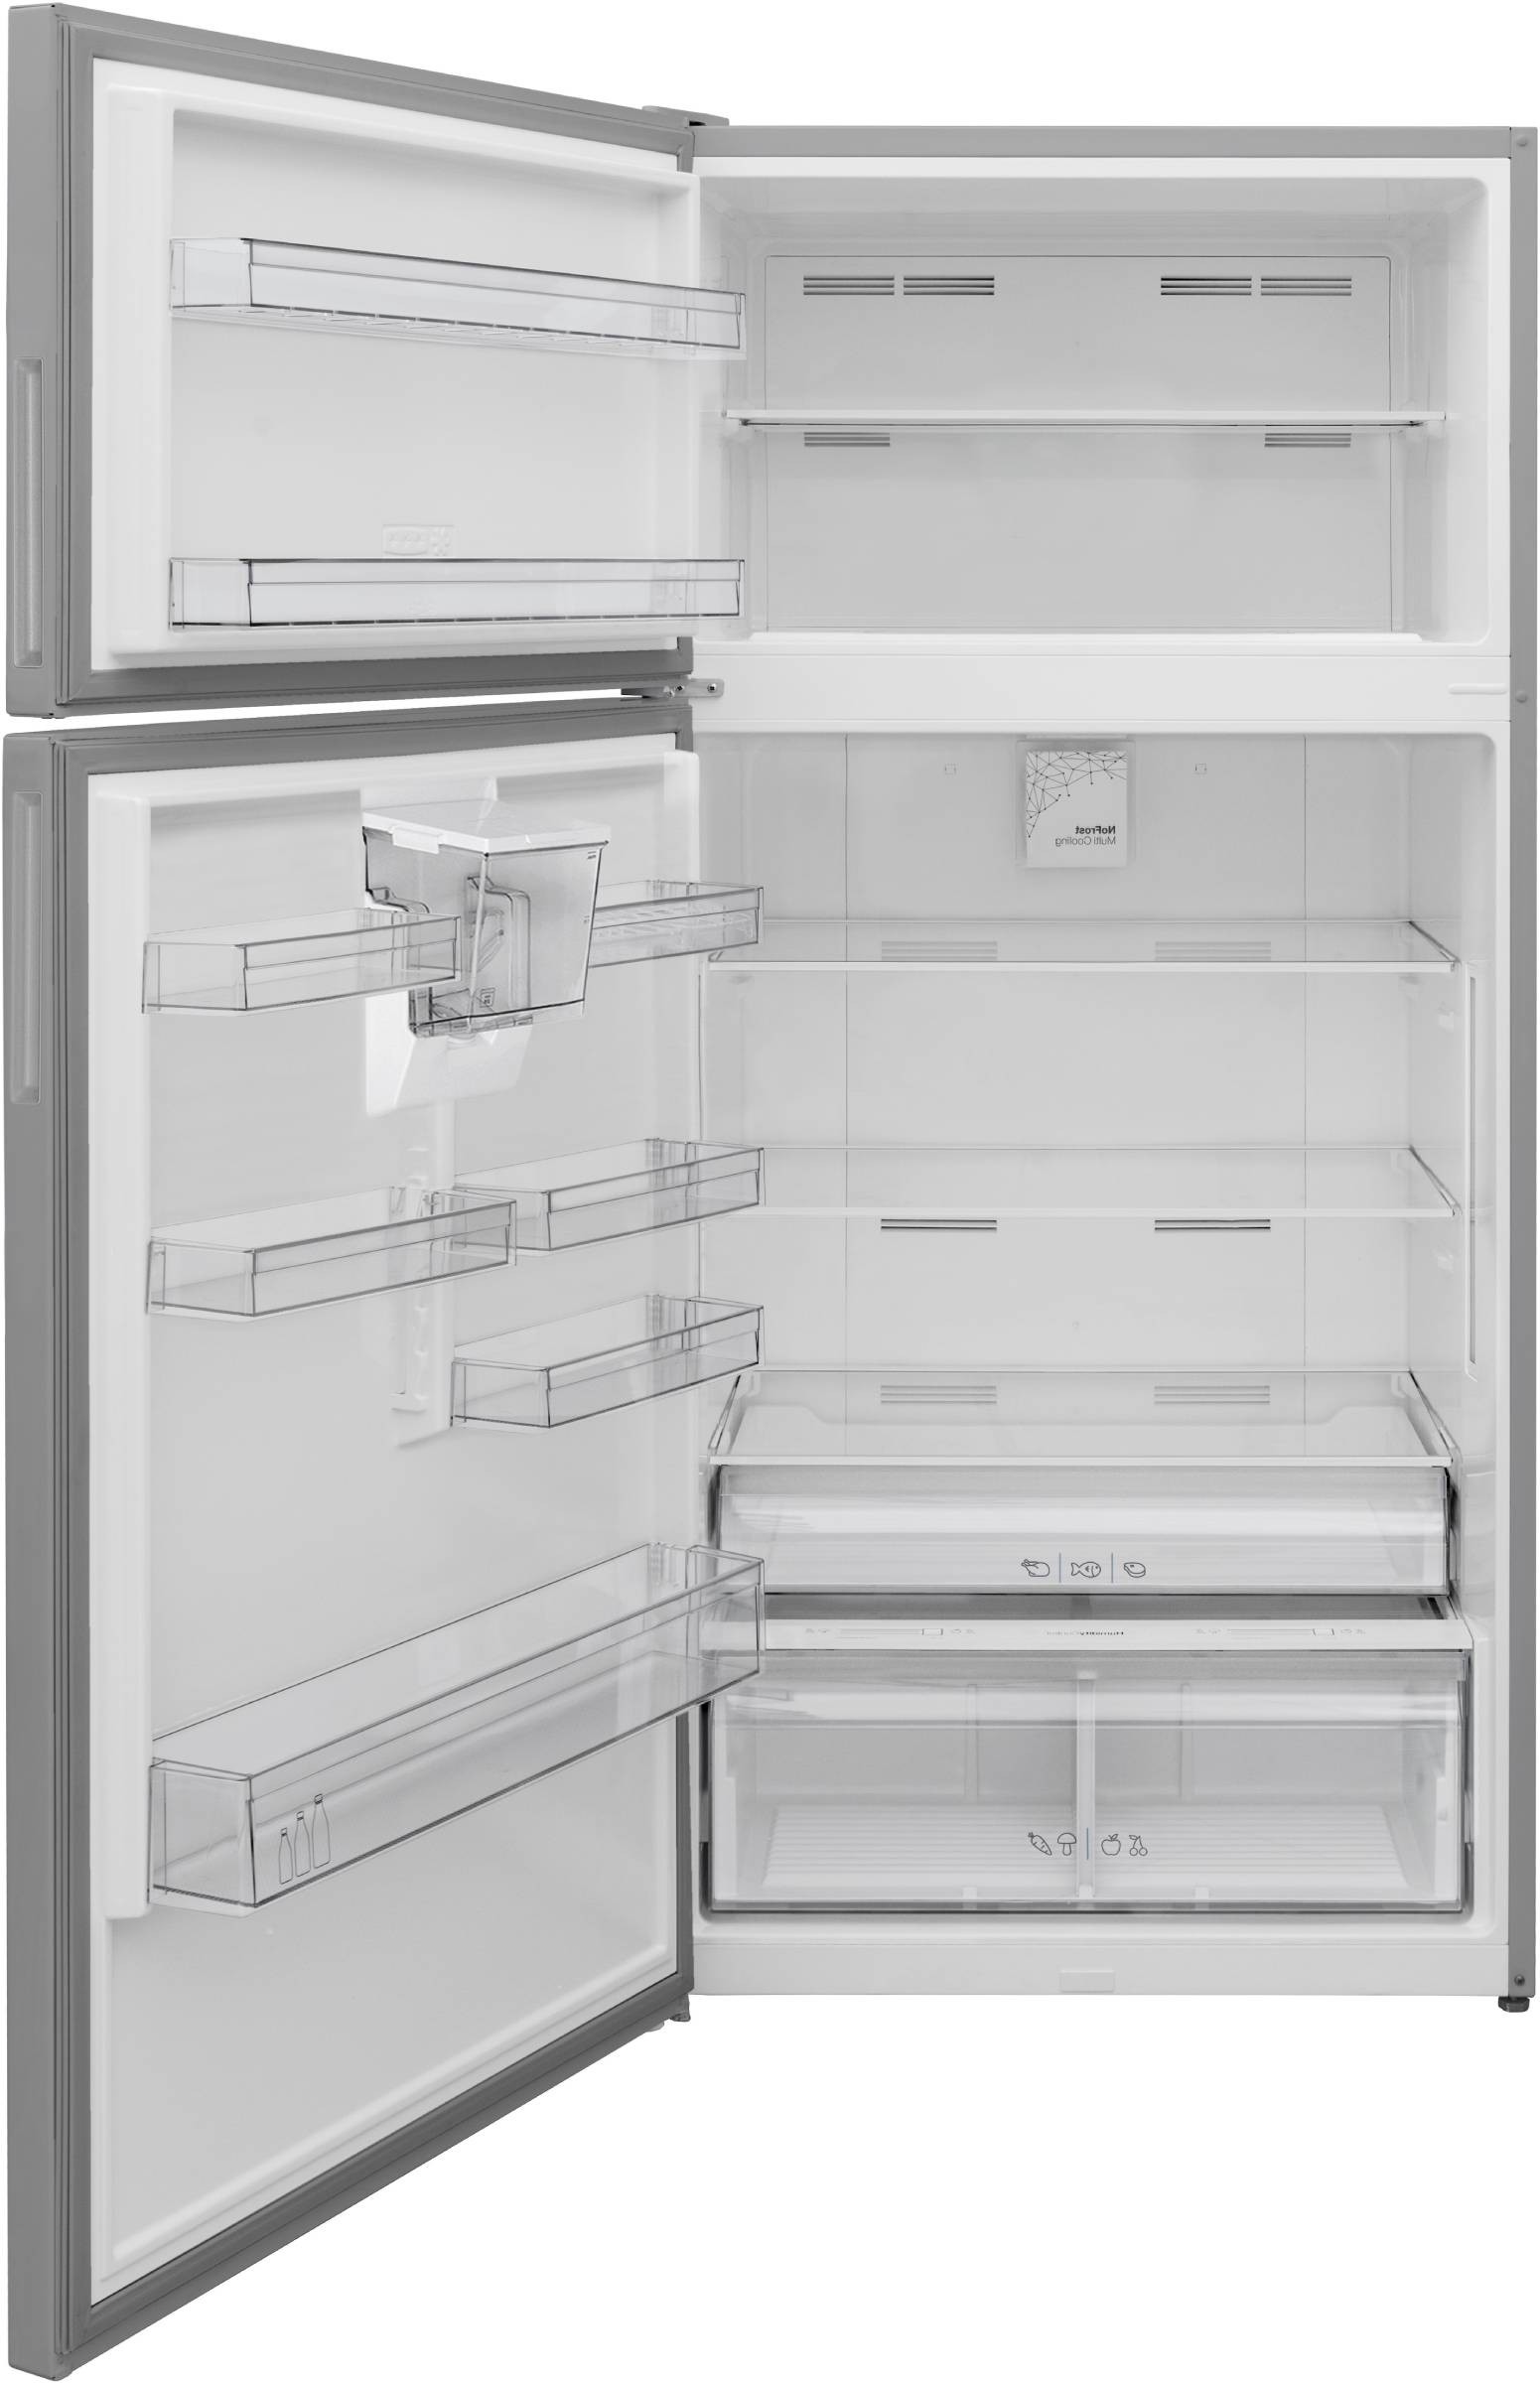 TELEFUNKEN Réfrigérateur congélateur haut No Frost Multi Cooling 587L Inox - R2P643NEXD